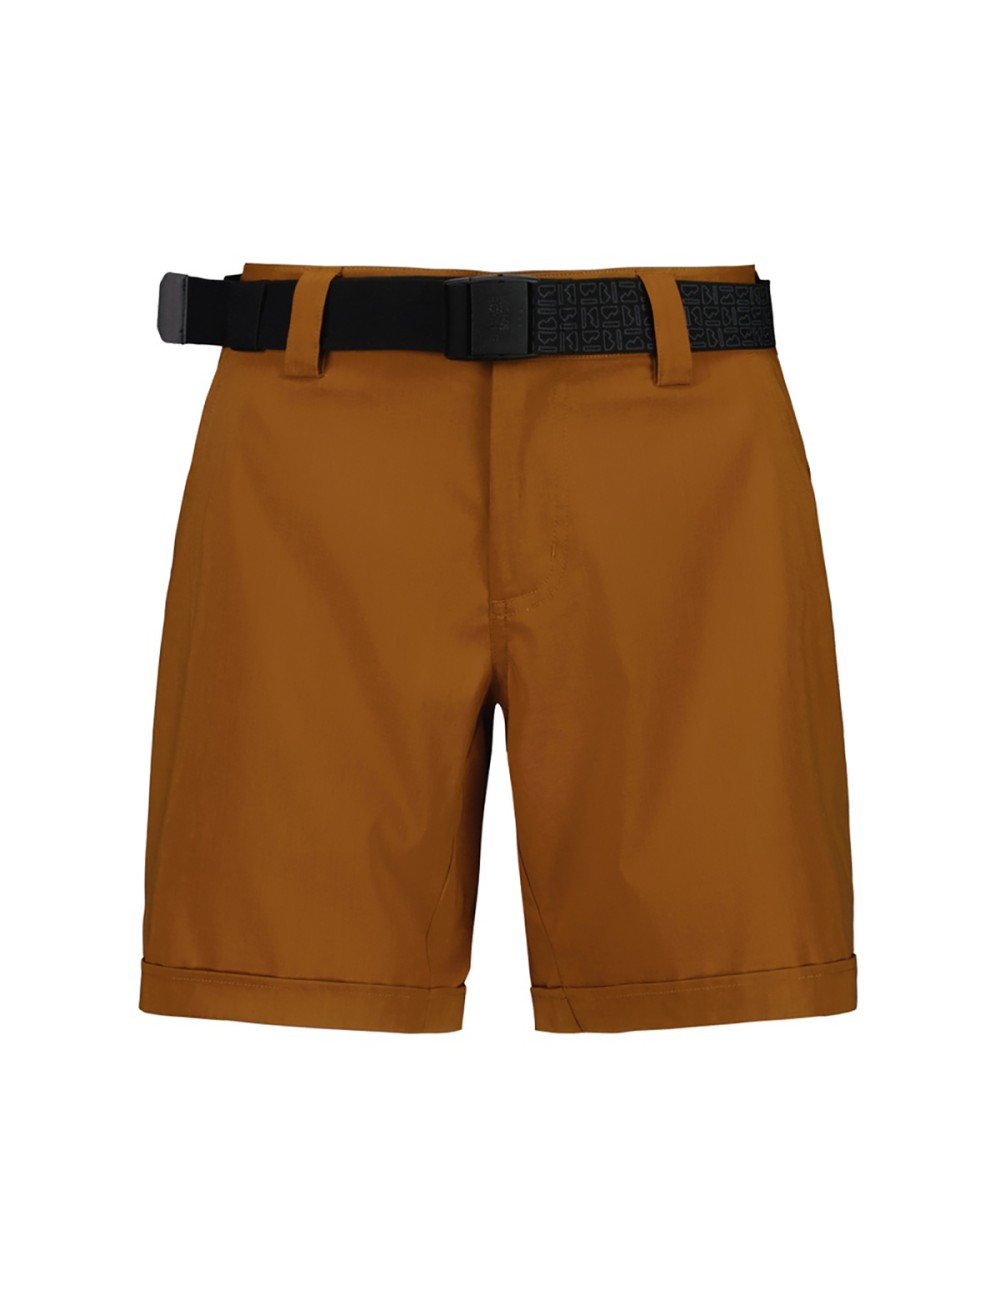 Mons Royale Wms Drift Shorts - Copper